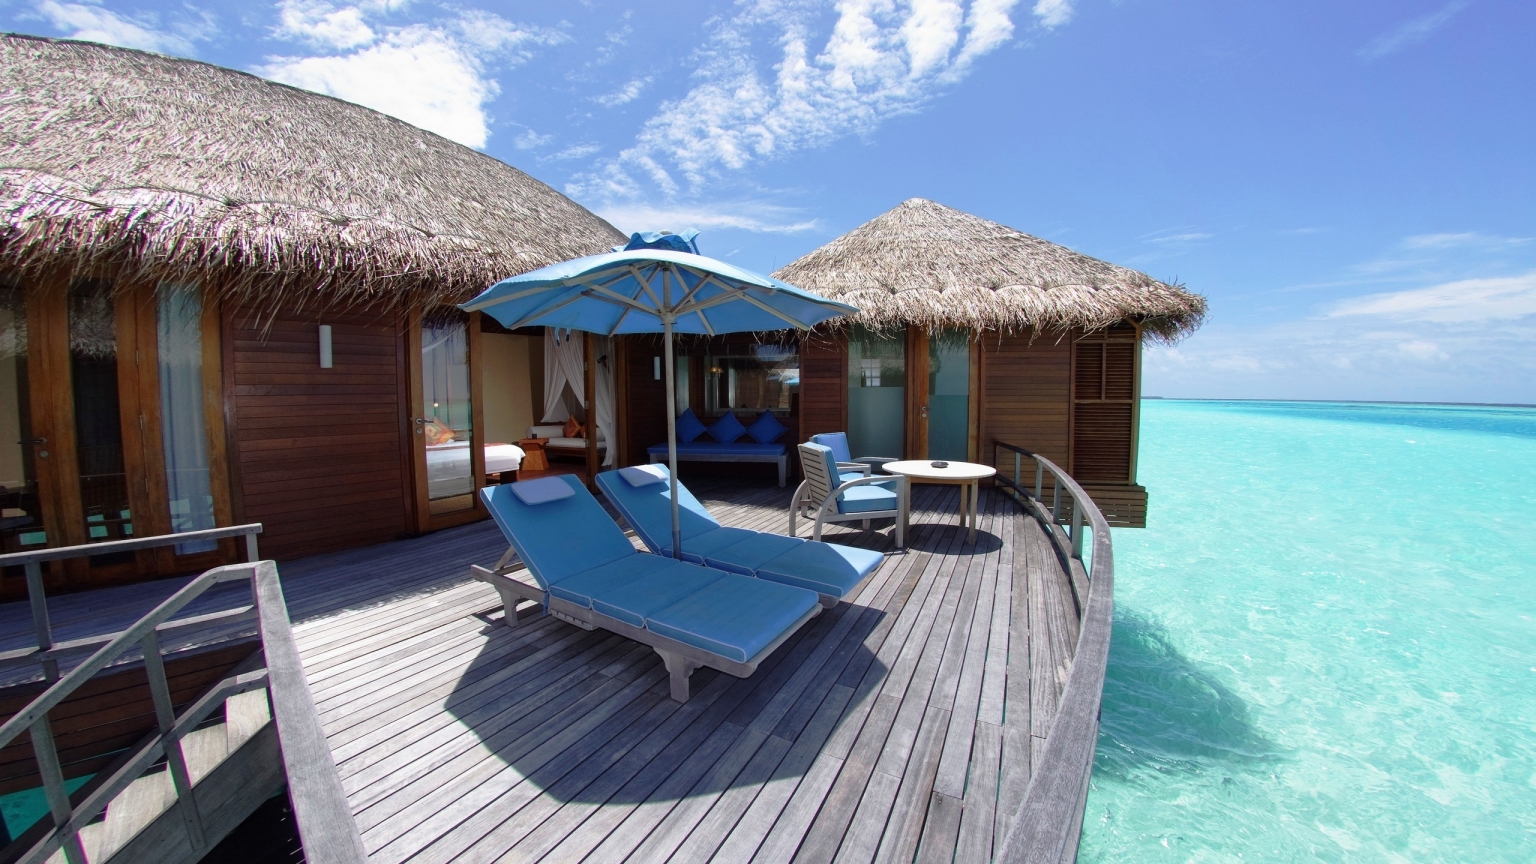 Maldives Resort for 1536 x 864 HDTV resolution